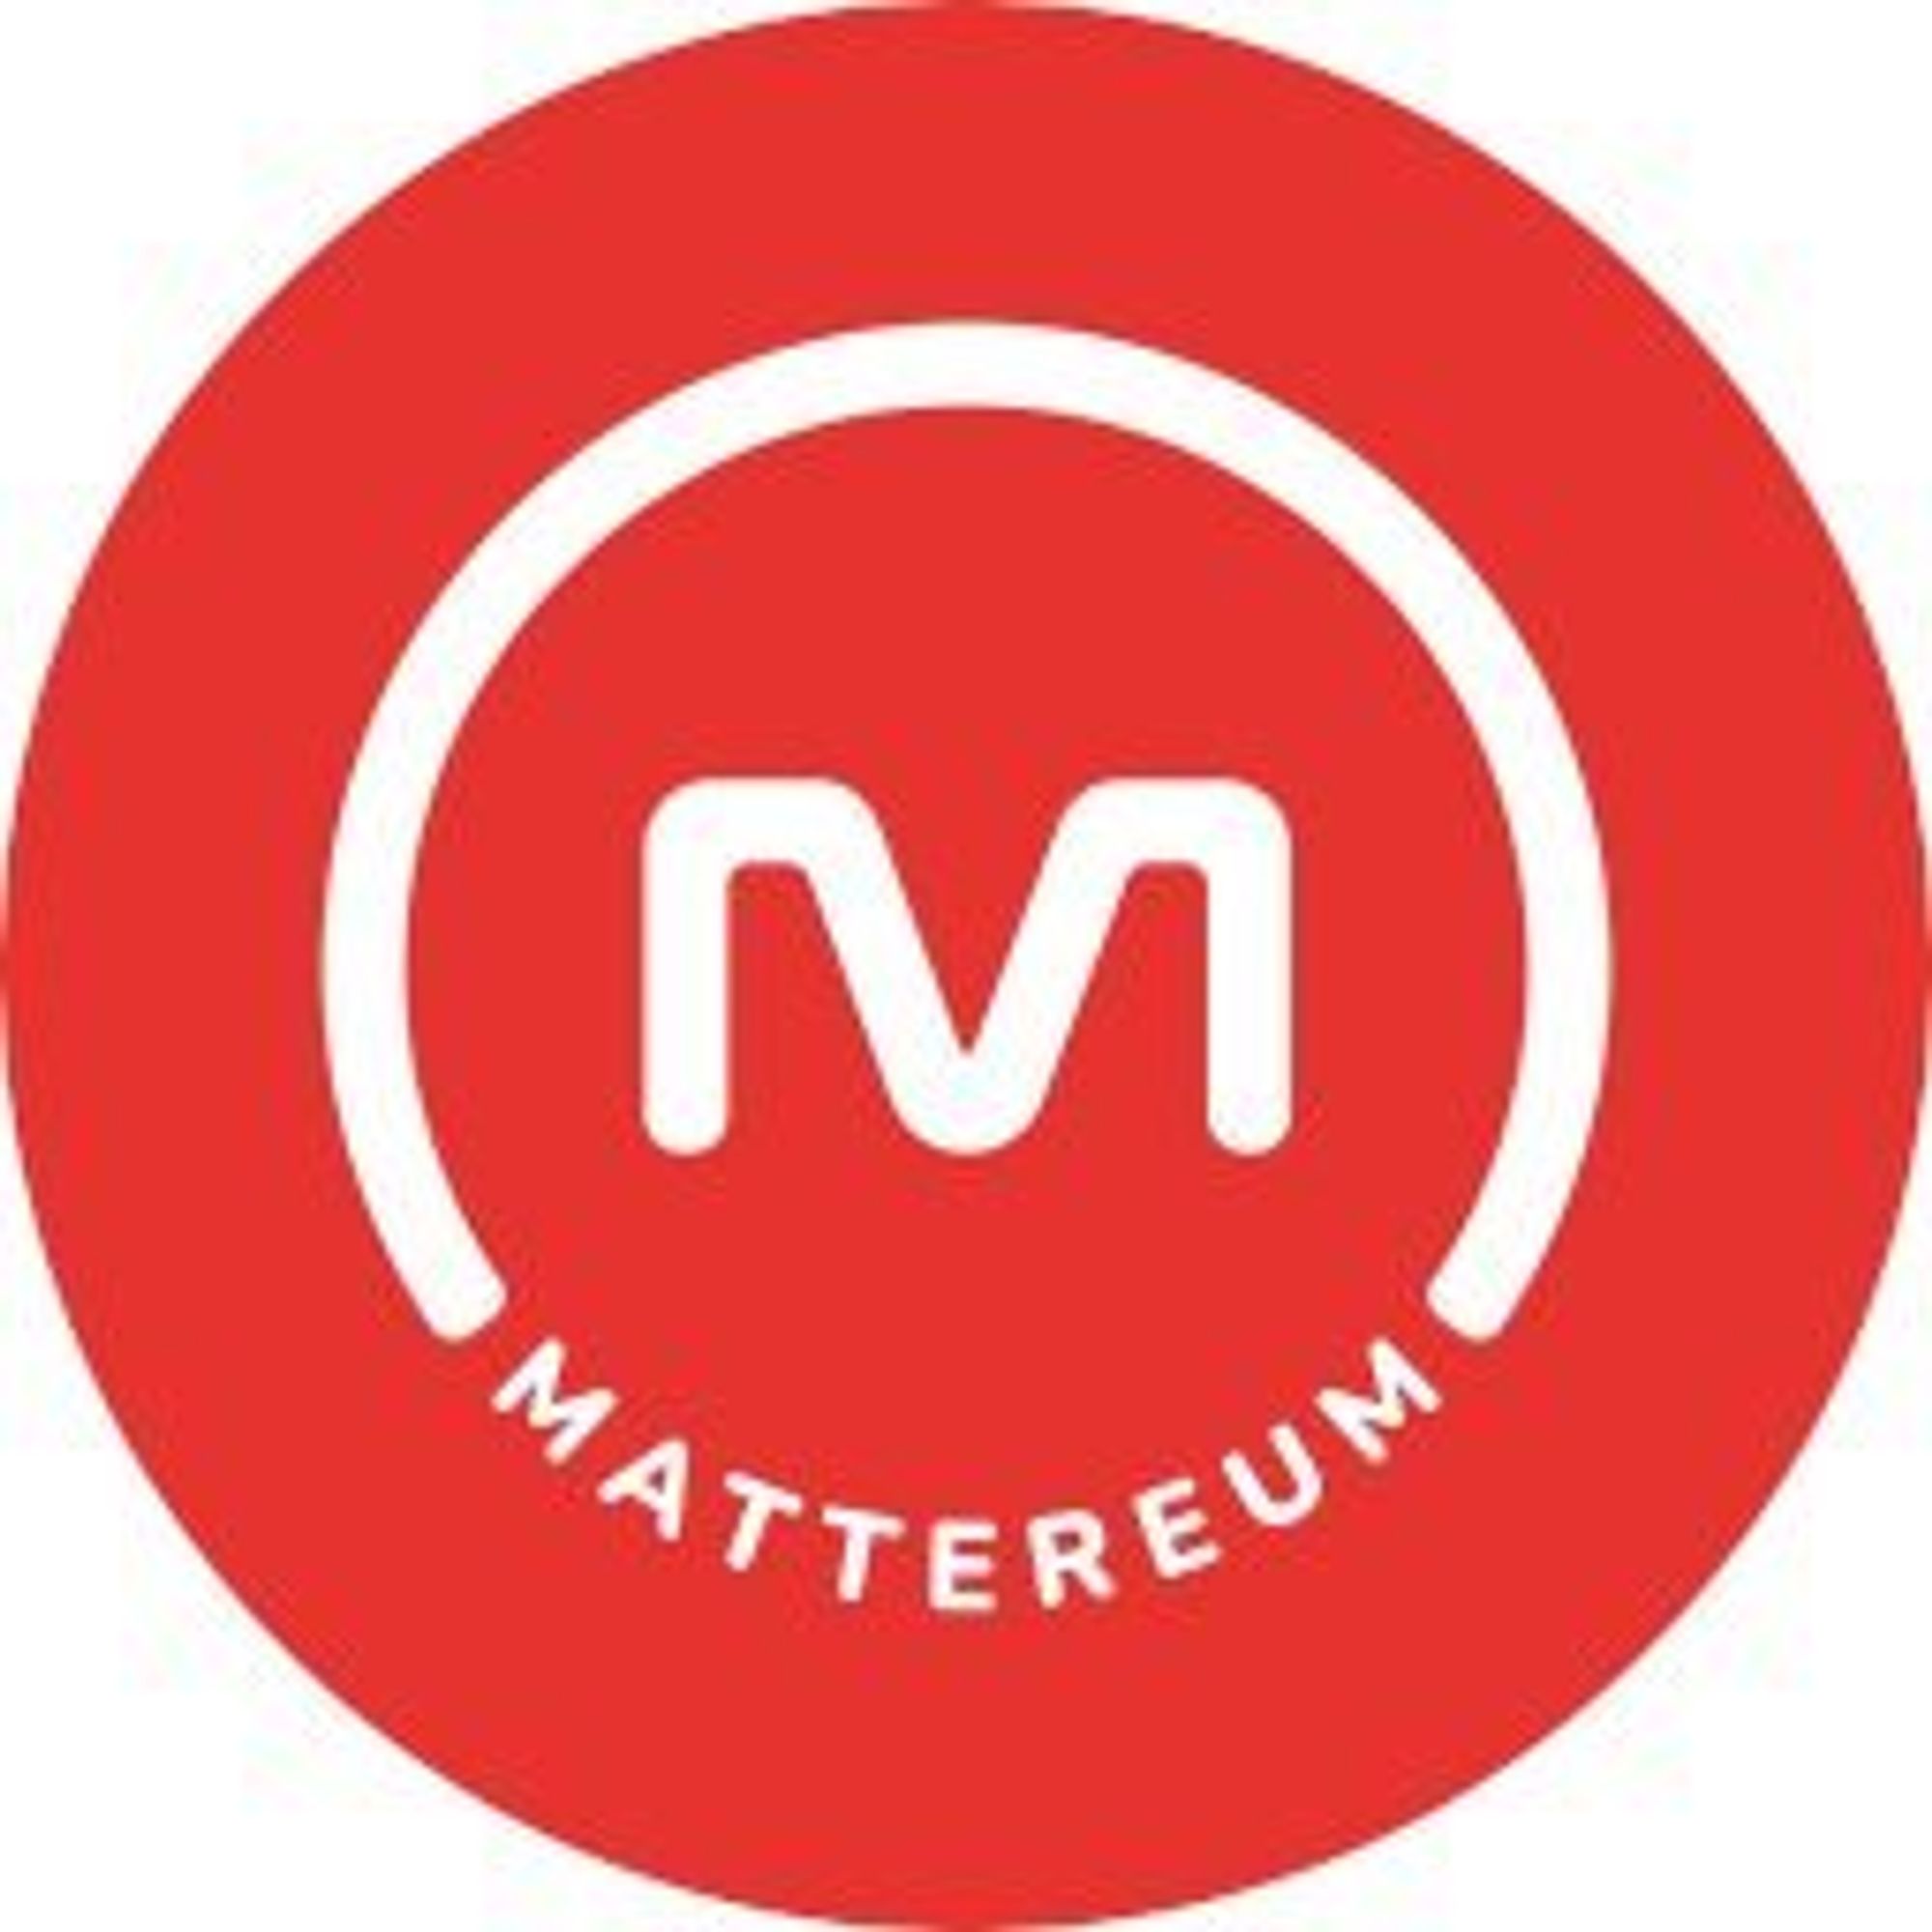 Mattereum